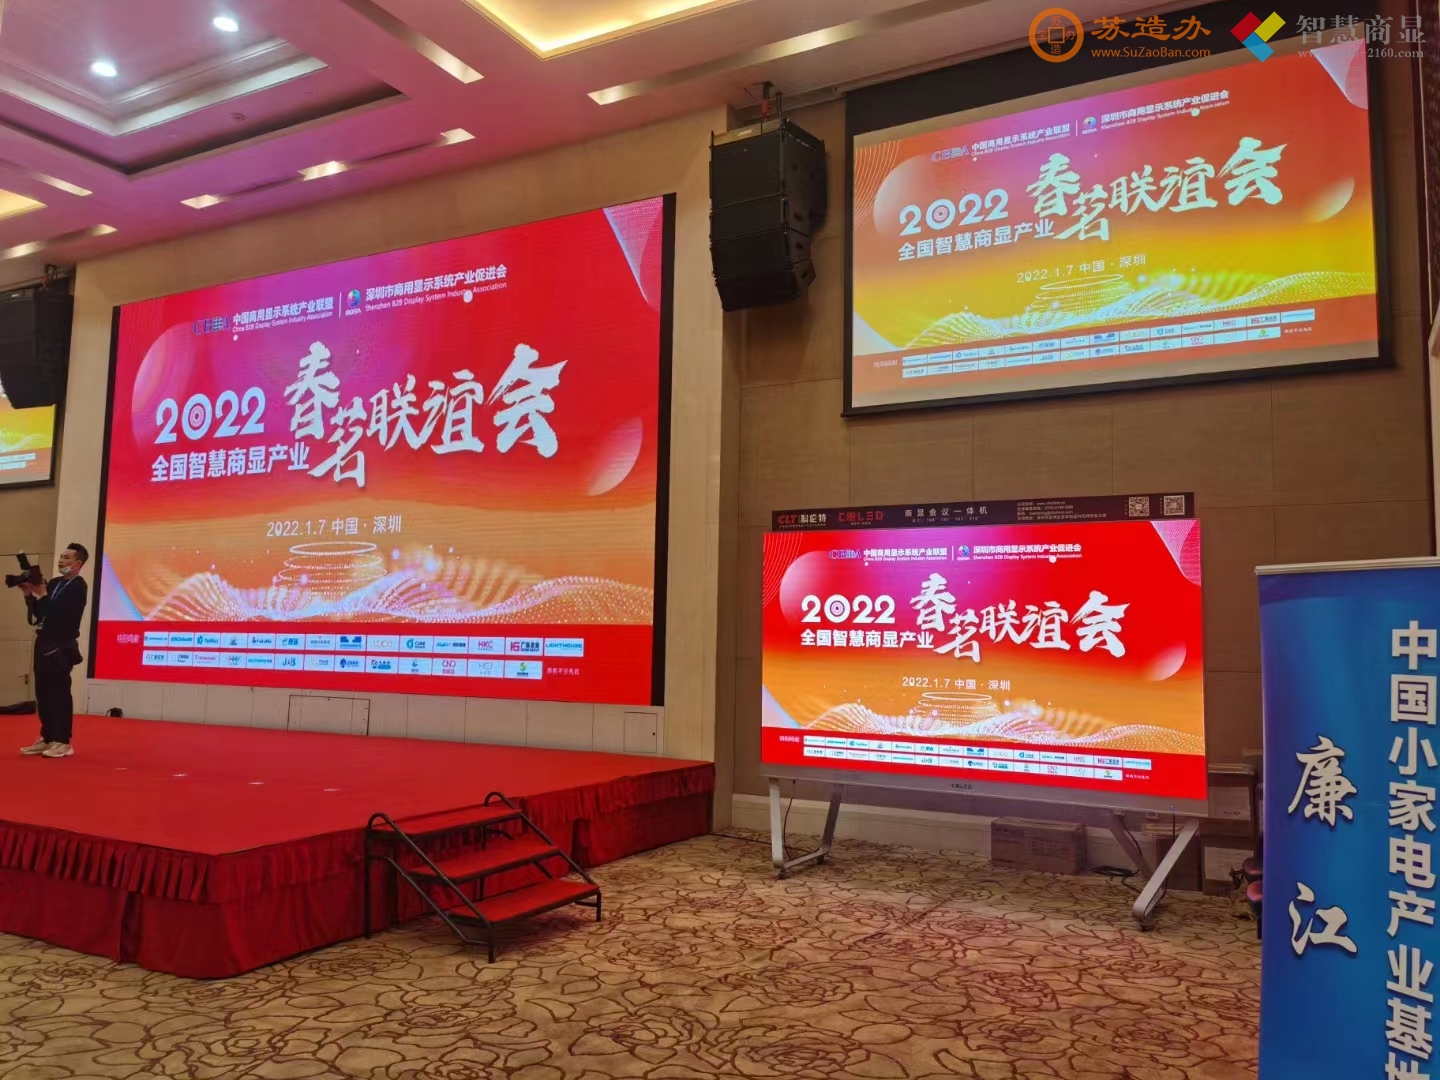 深圳市商显行业促进会上的LED大屏幕